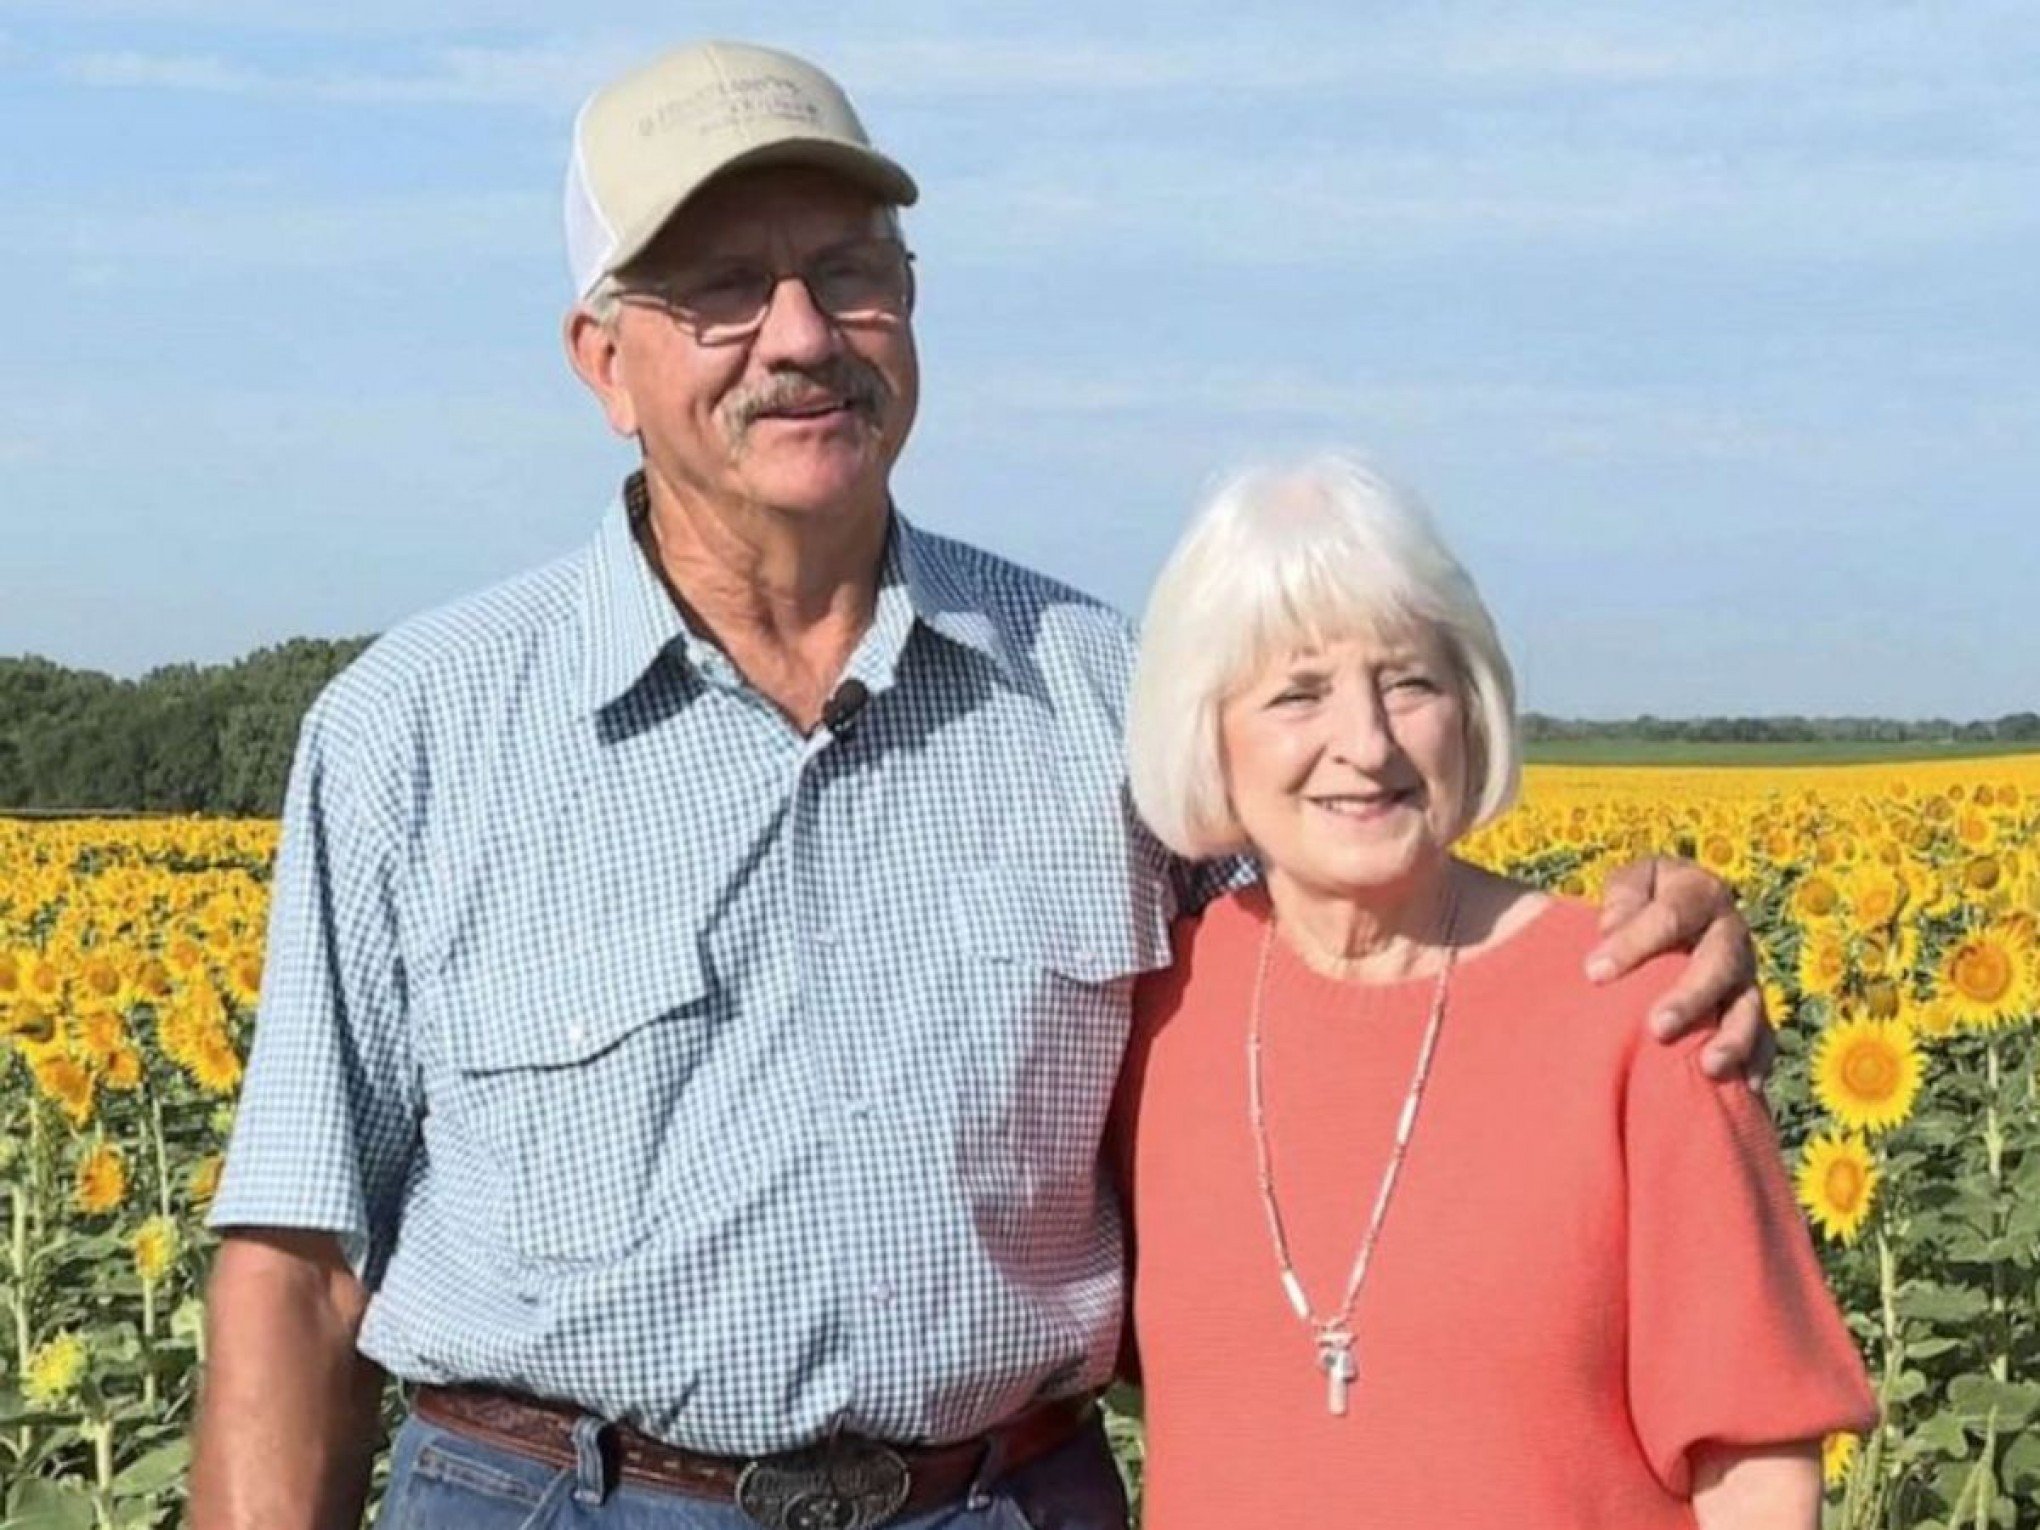 DATA ESPECIAL: Homem planta mais de 1 milhão de girassóis para comemorar bodas de ouro com a esposa; "me fez sentir especial"